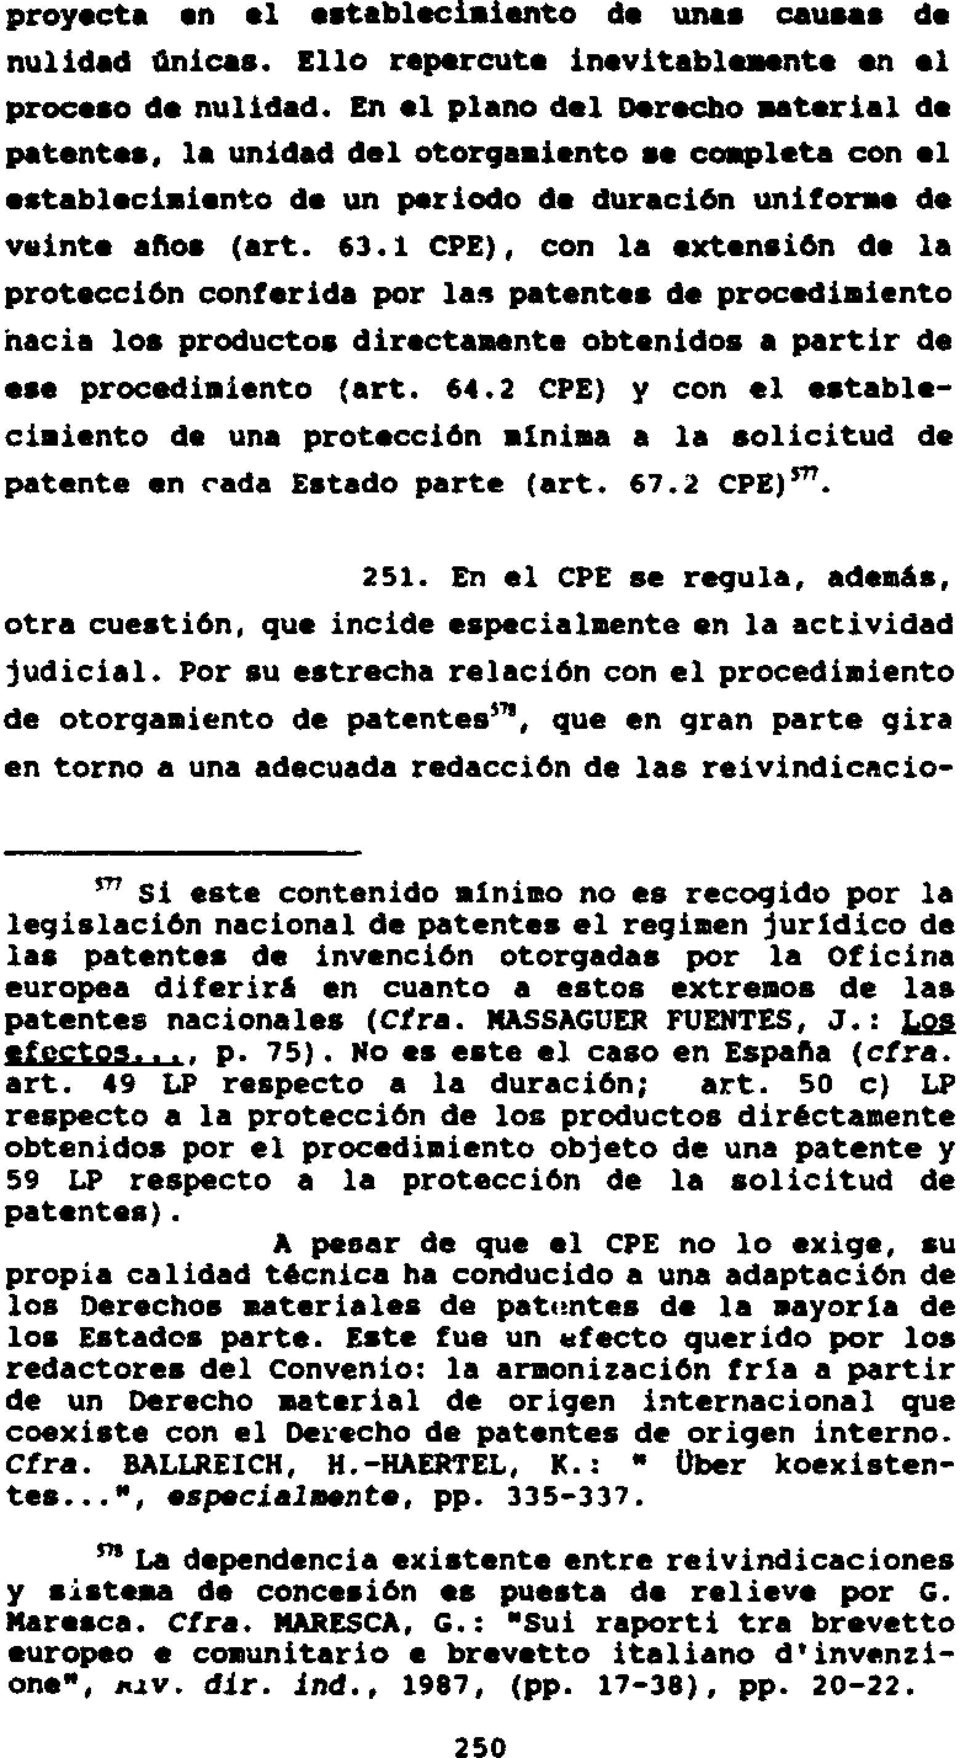 1 CPE), con la extensión de la protección conferida por las patentes de procediiento hacia los productos directaente obtenidos a partir de ese procediiento (art. 64.